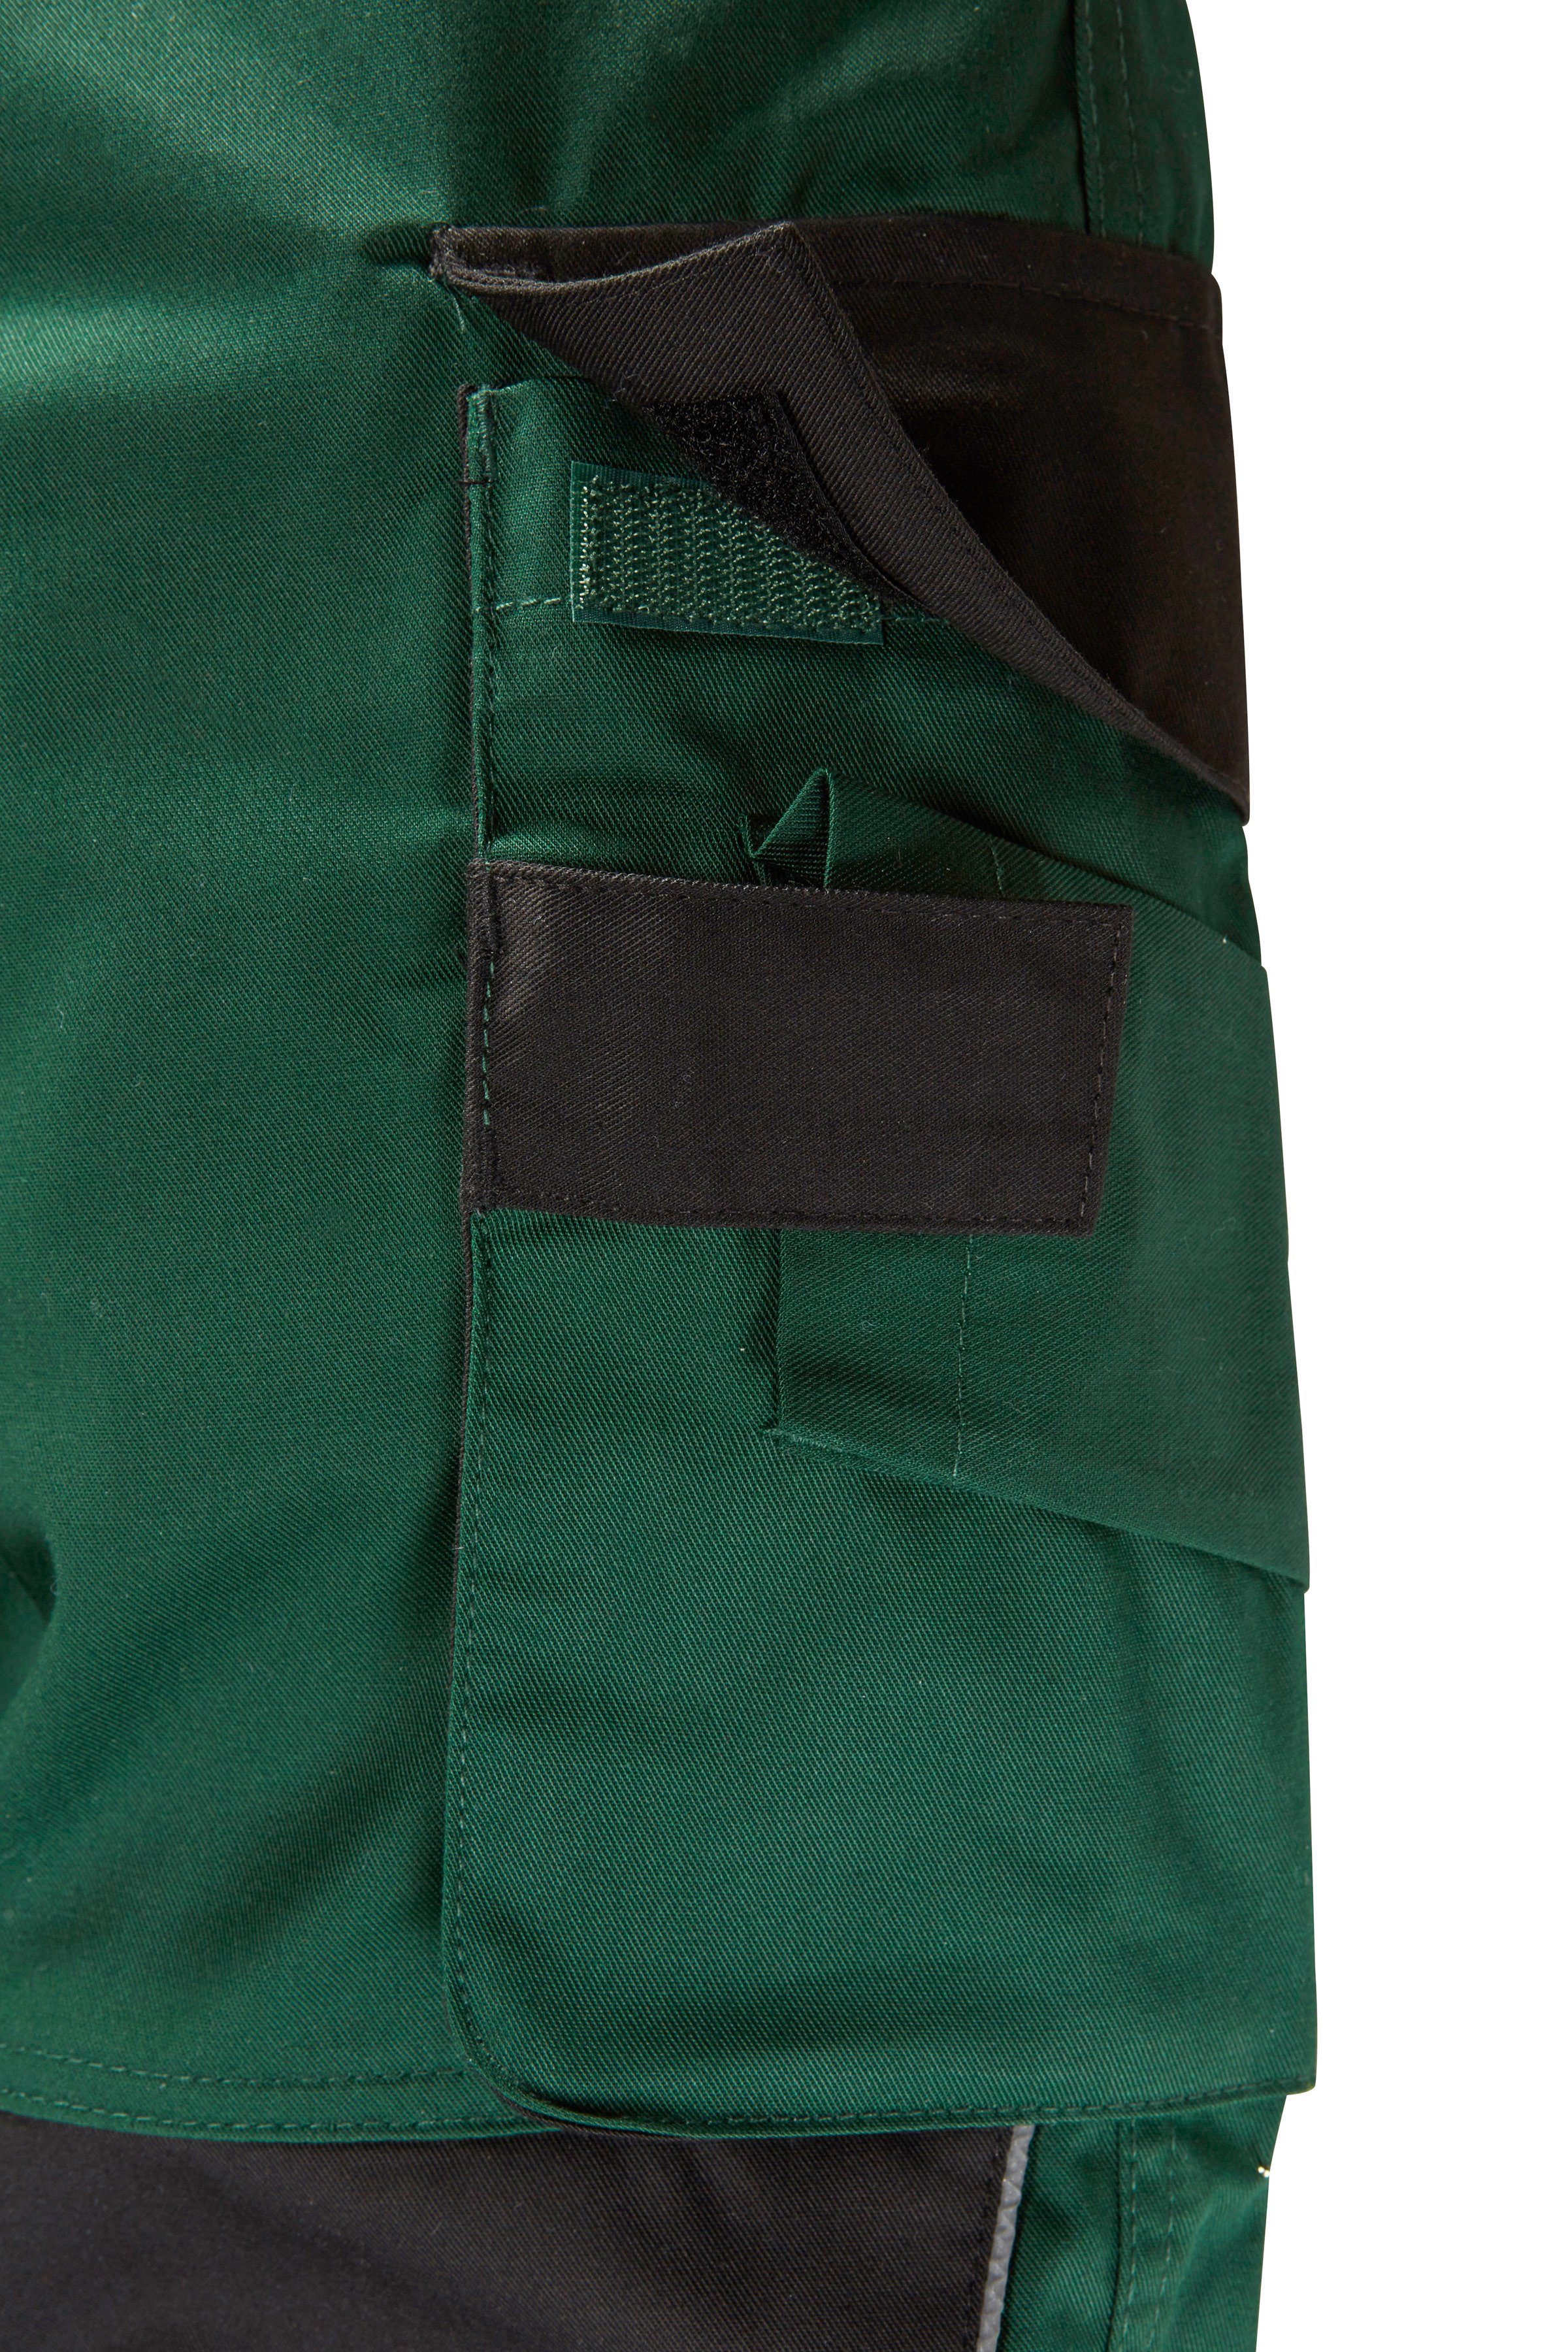 safety& more mit grün-schwarz Pull Knieverstärkung Arbeitshose